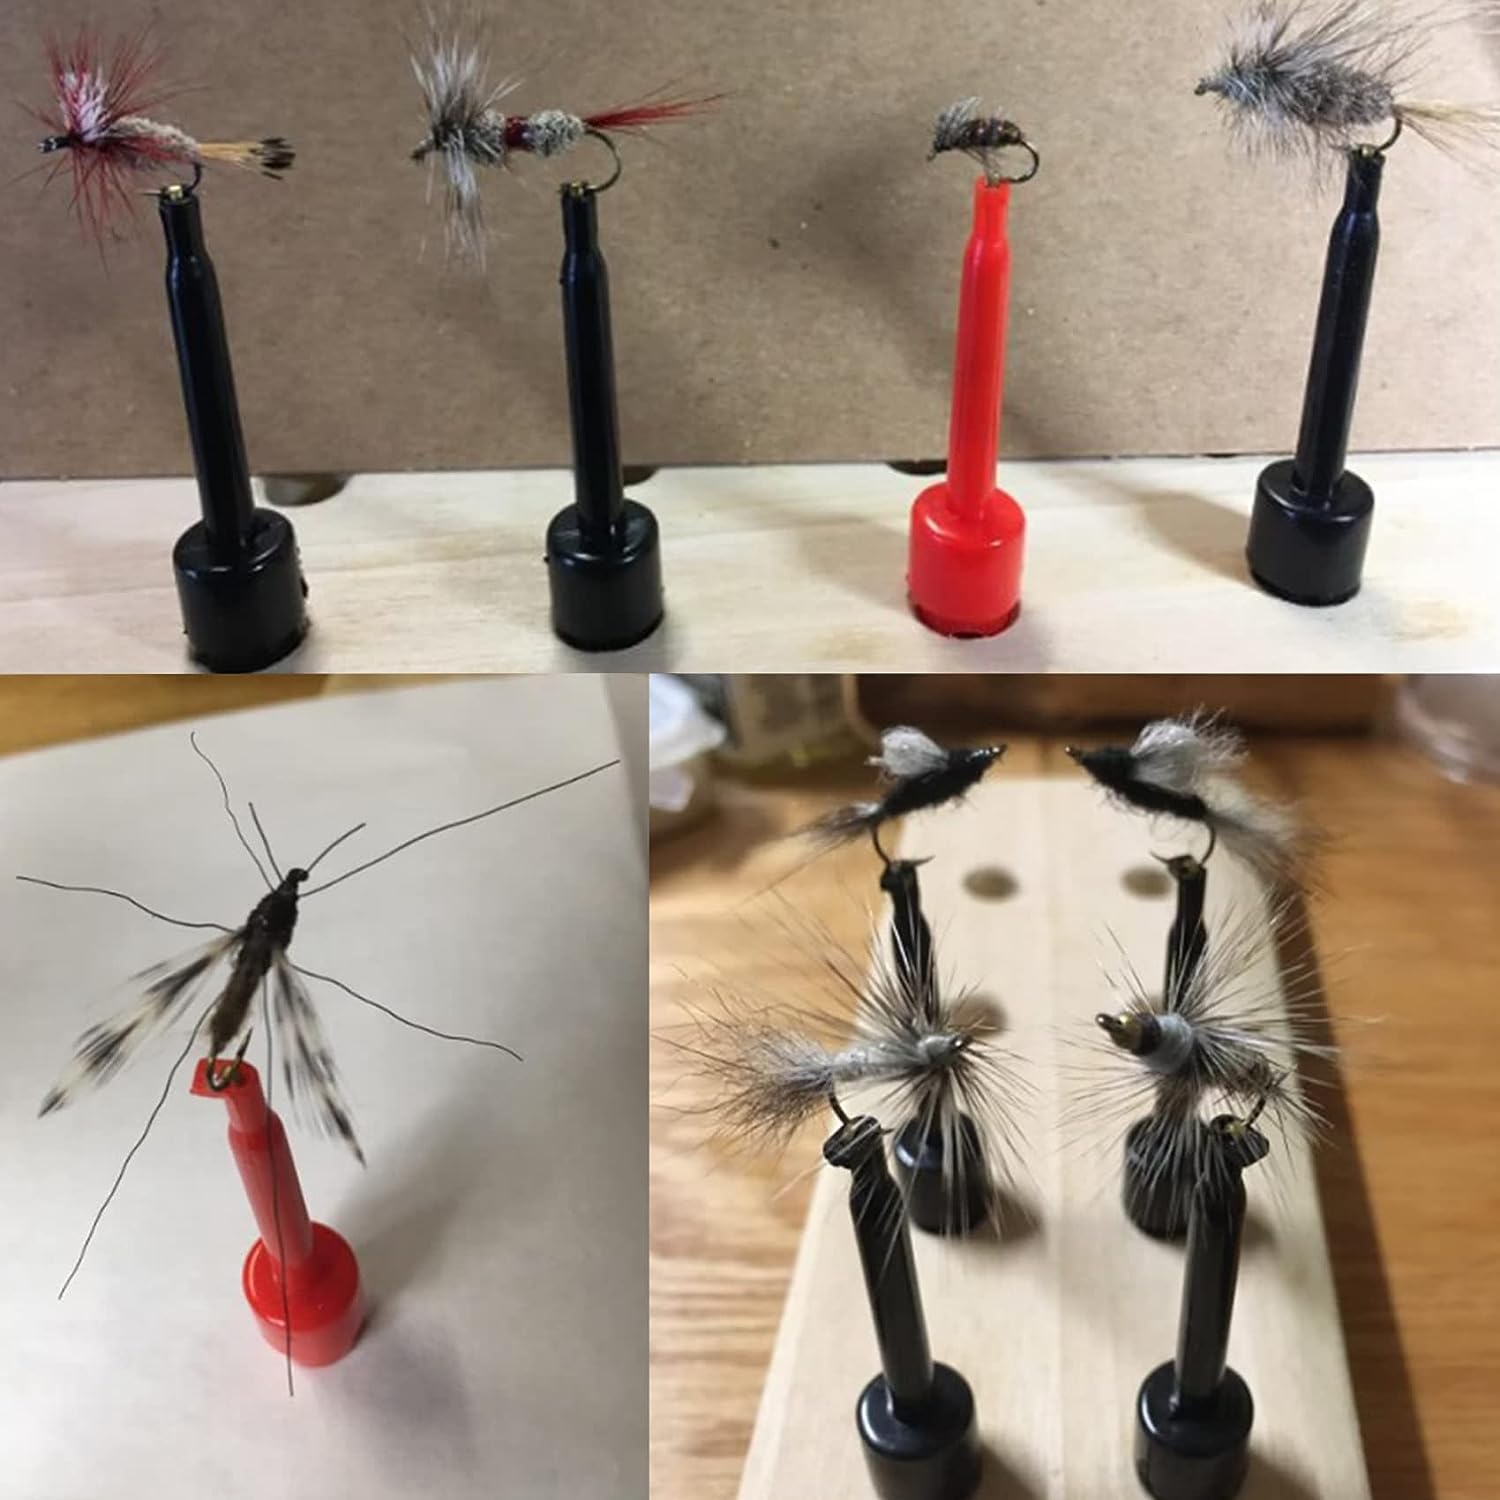 6pcs Fly Hook Hackle Pliers, Flies Lures or Hooks Display – Fly Fish Flies